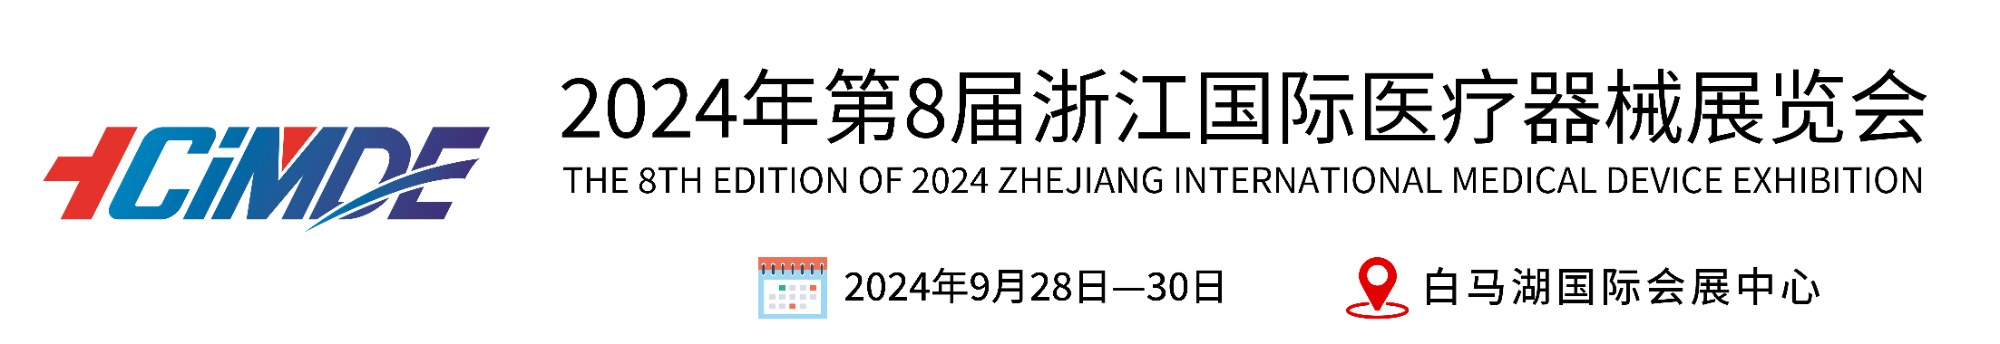 2024浙江国际医疗器械展览会-官网